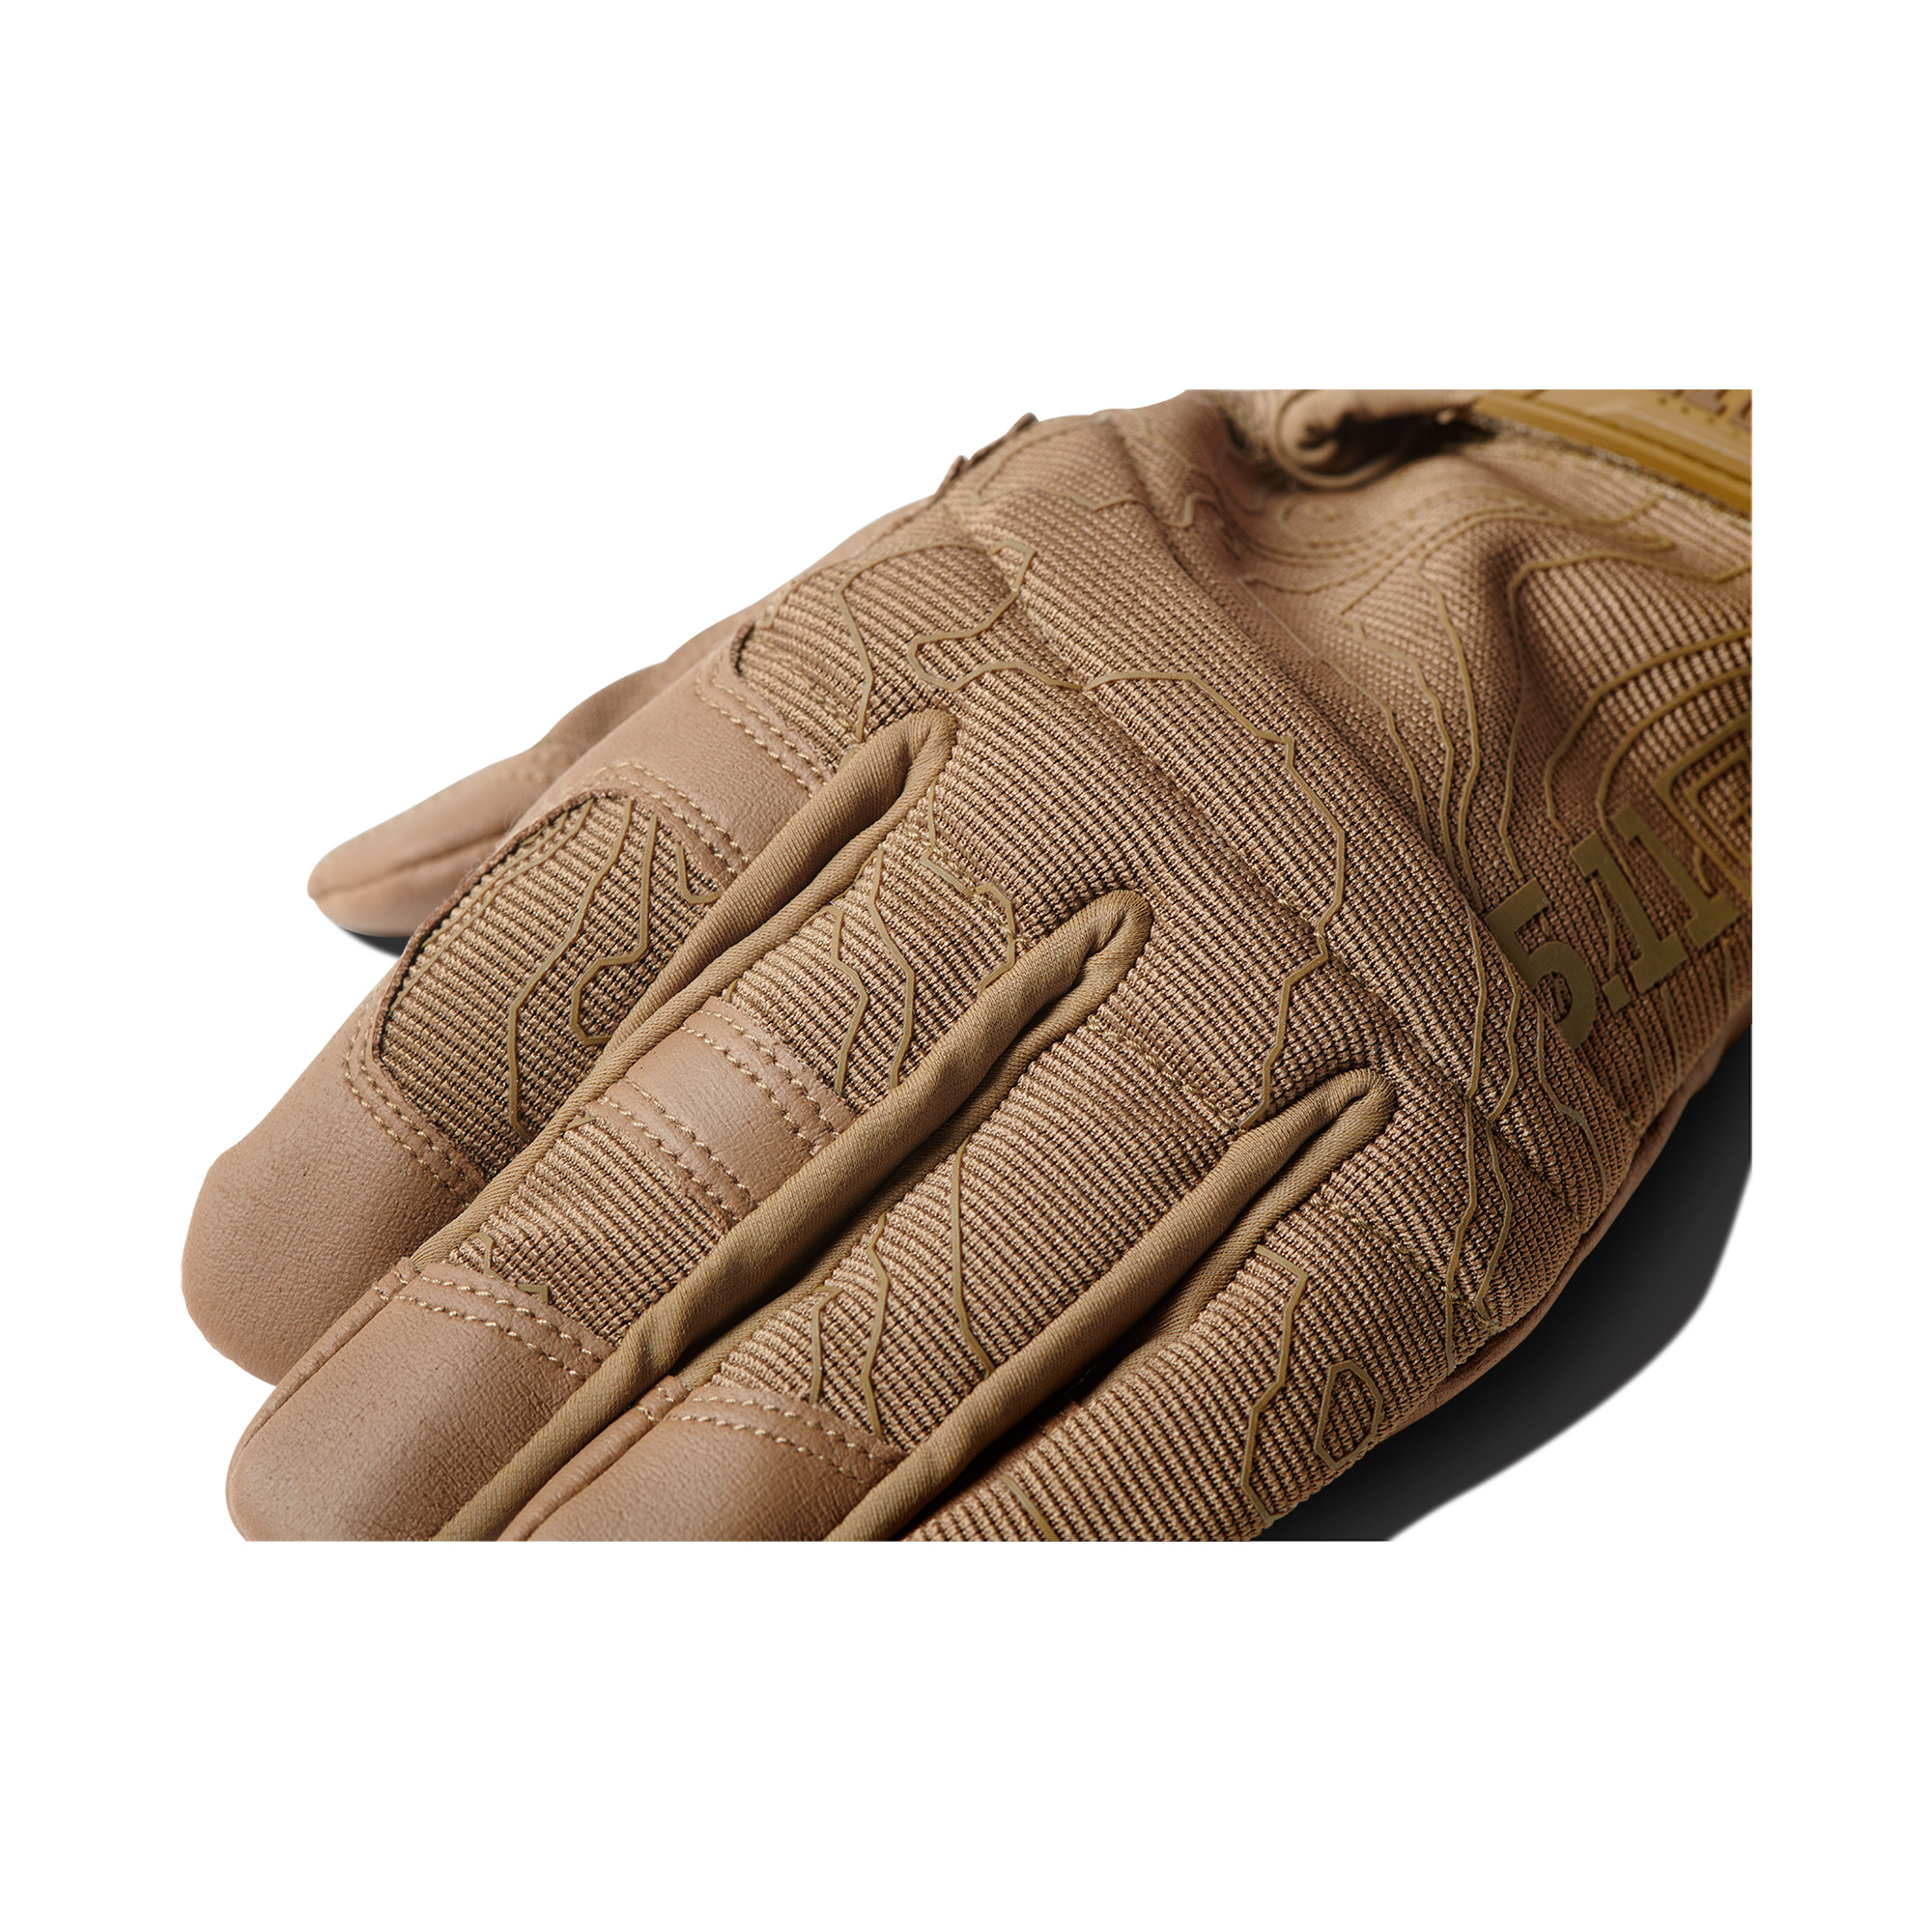 5.11 High Abrasion TAC Glove